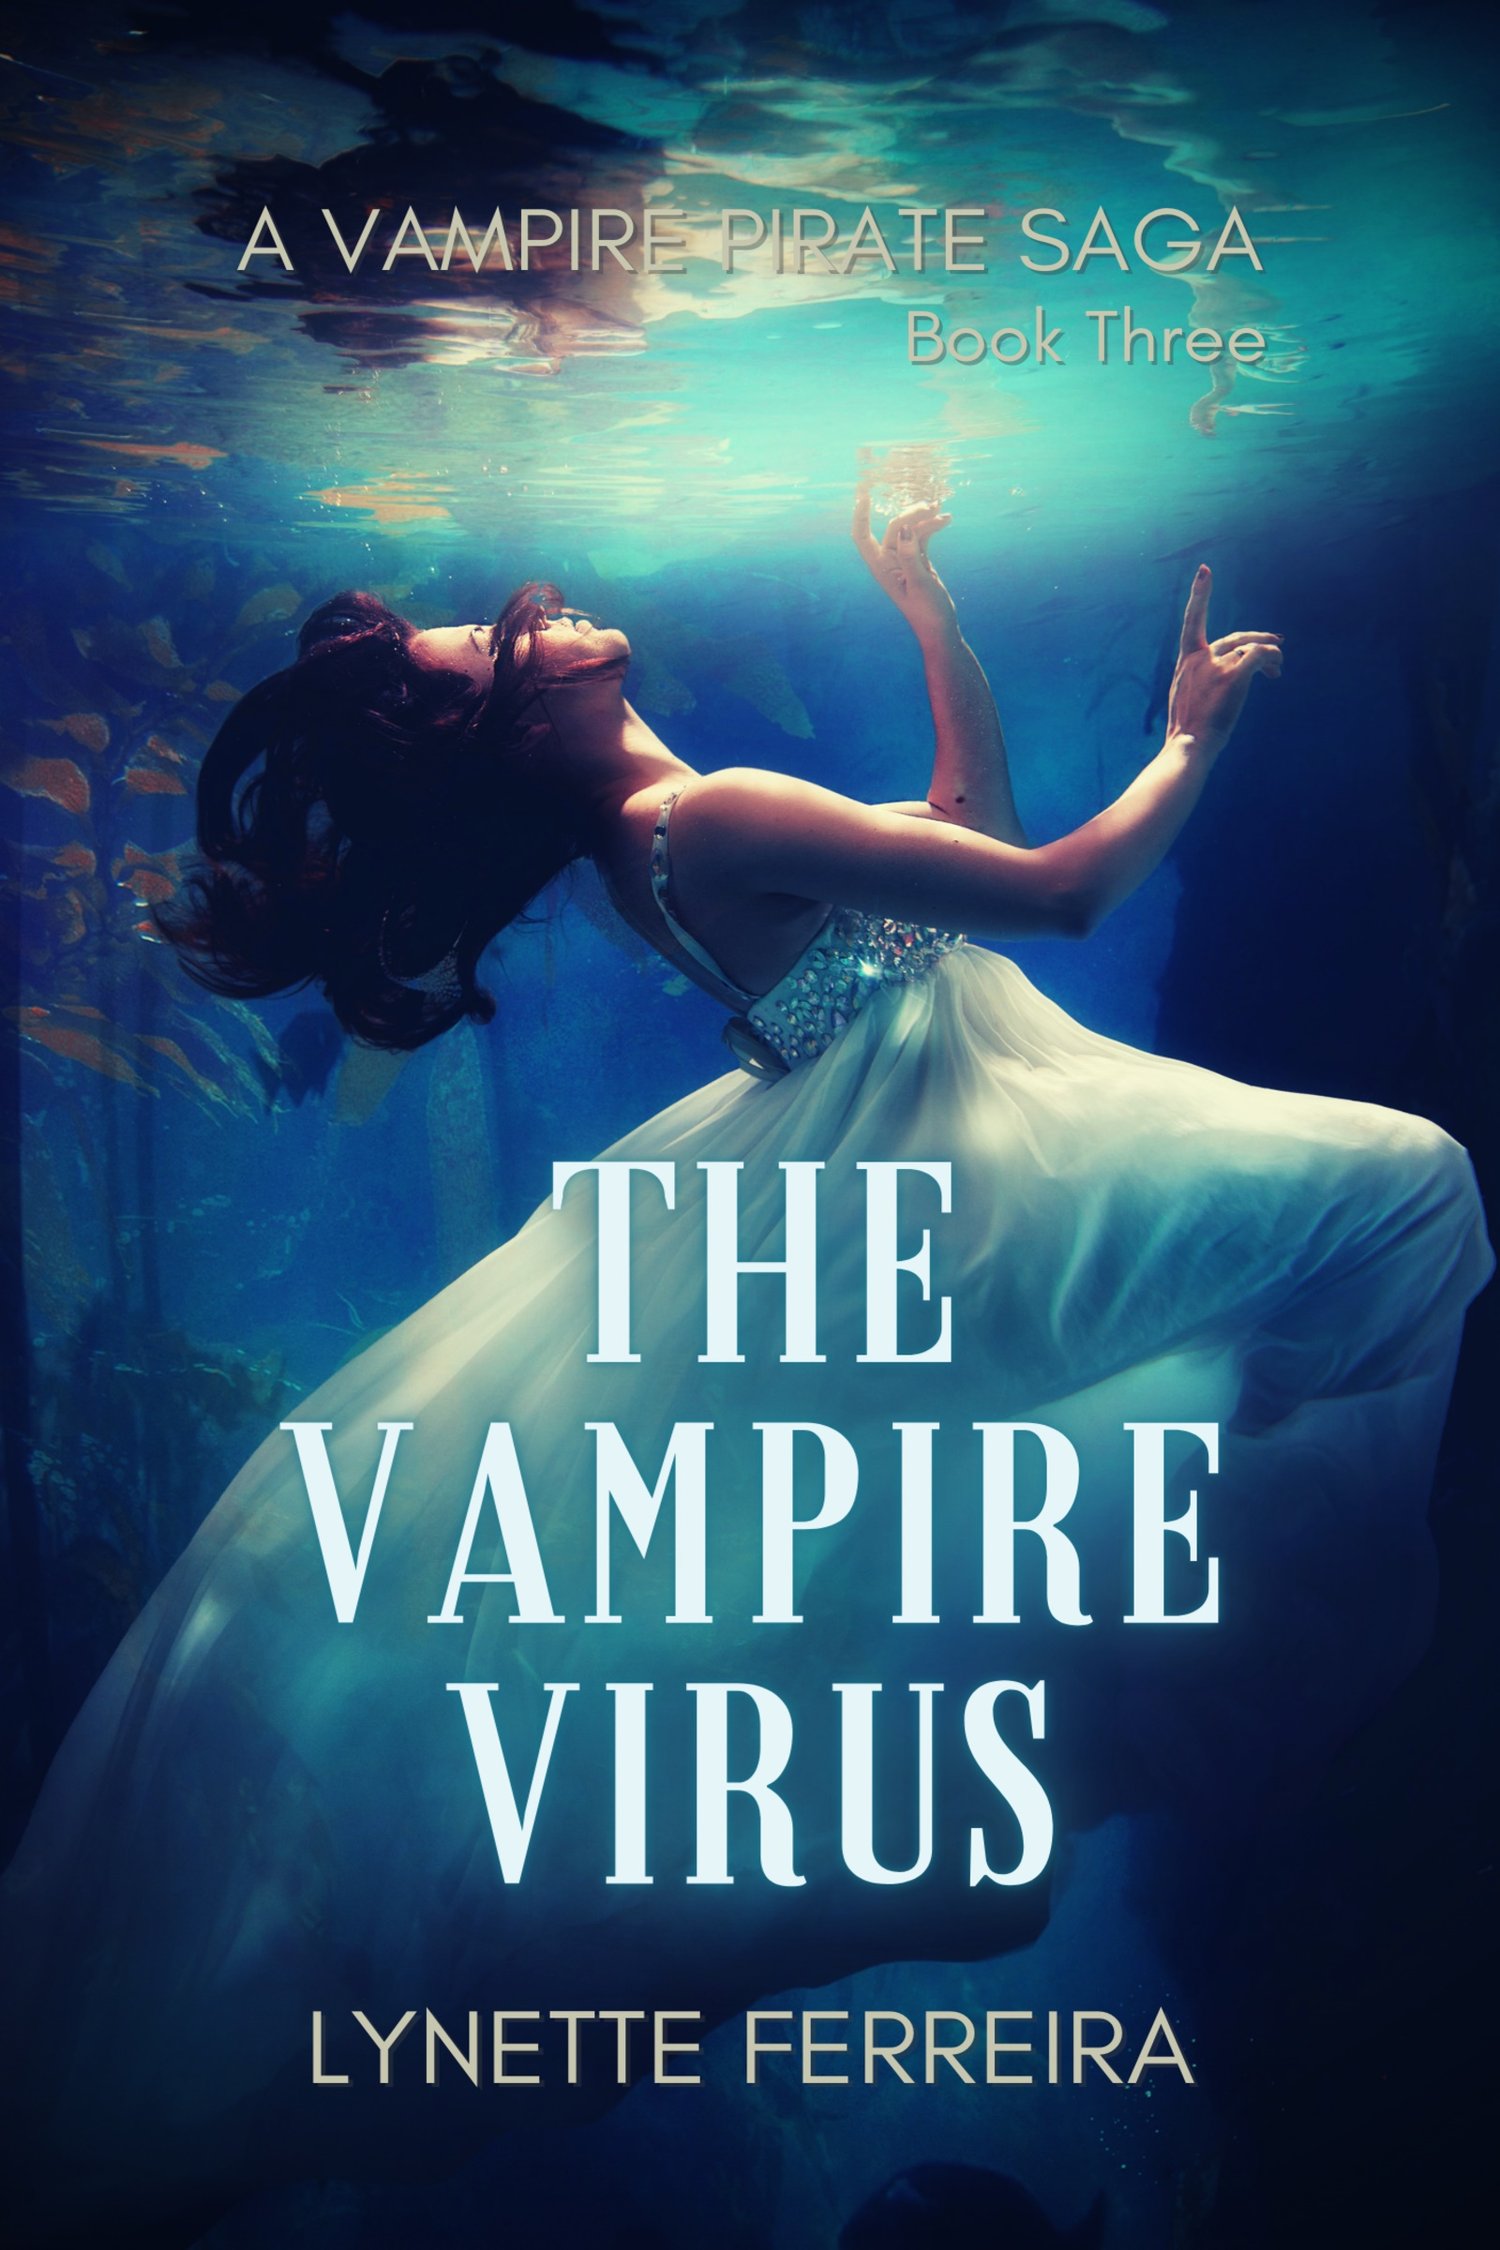 The Vampire Virus by Lynette Ferreira